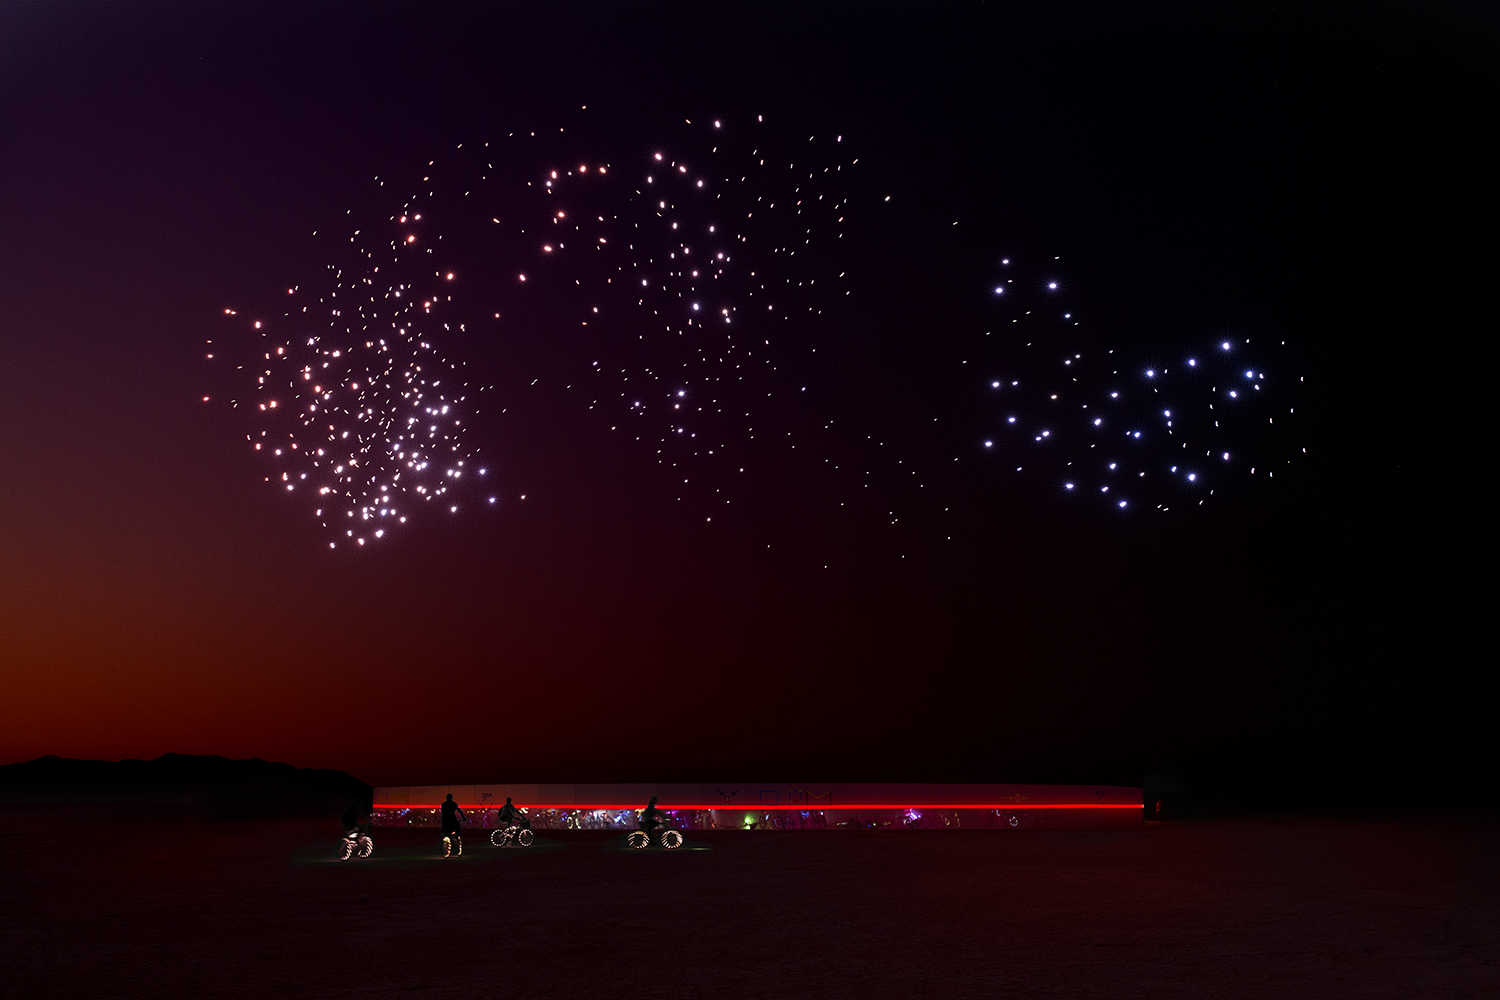 Franchise Freedom taking flight over Burning Man festival in September 2018.